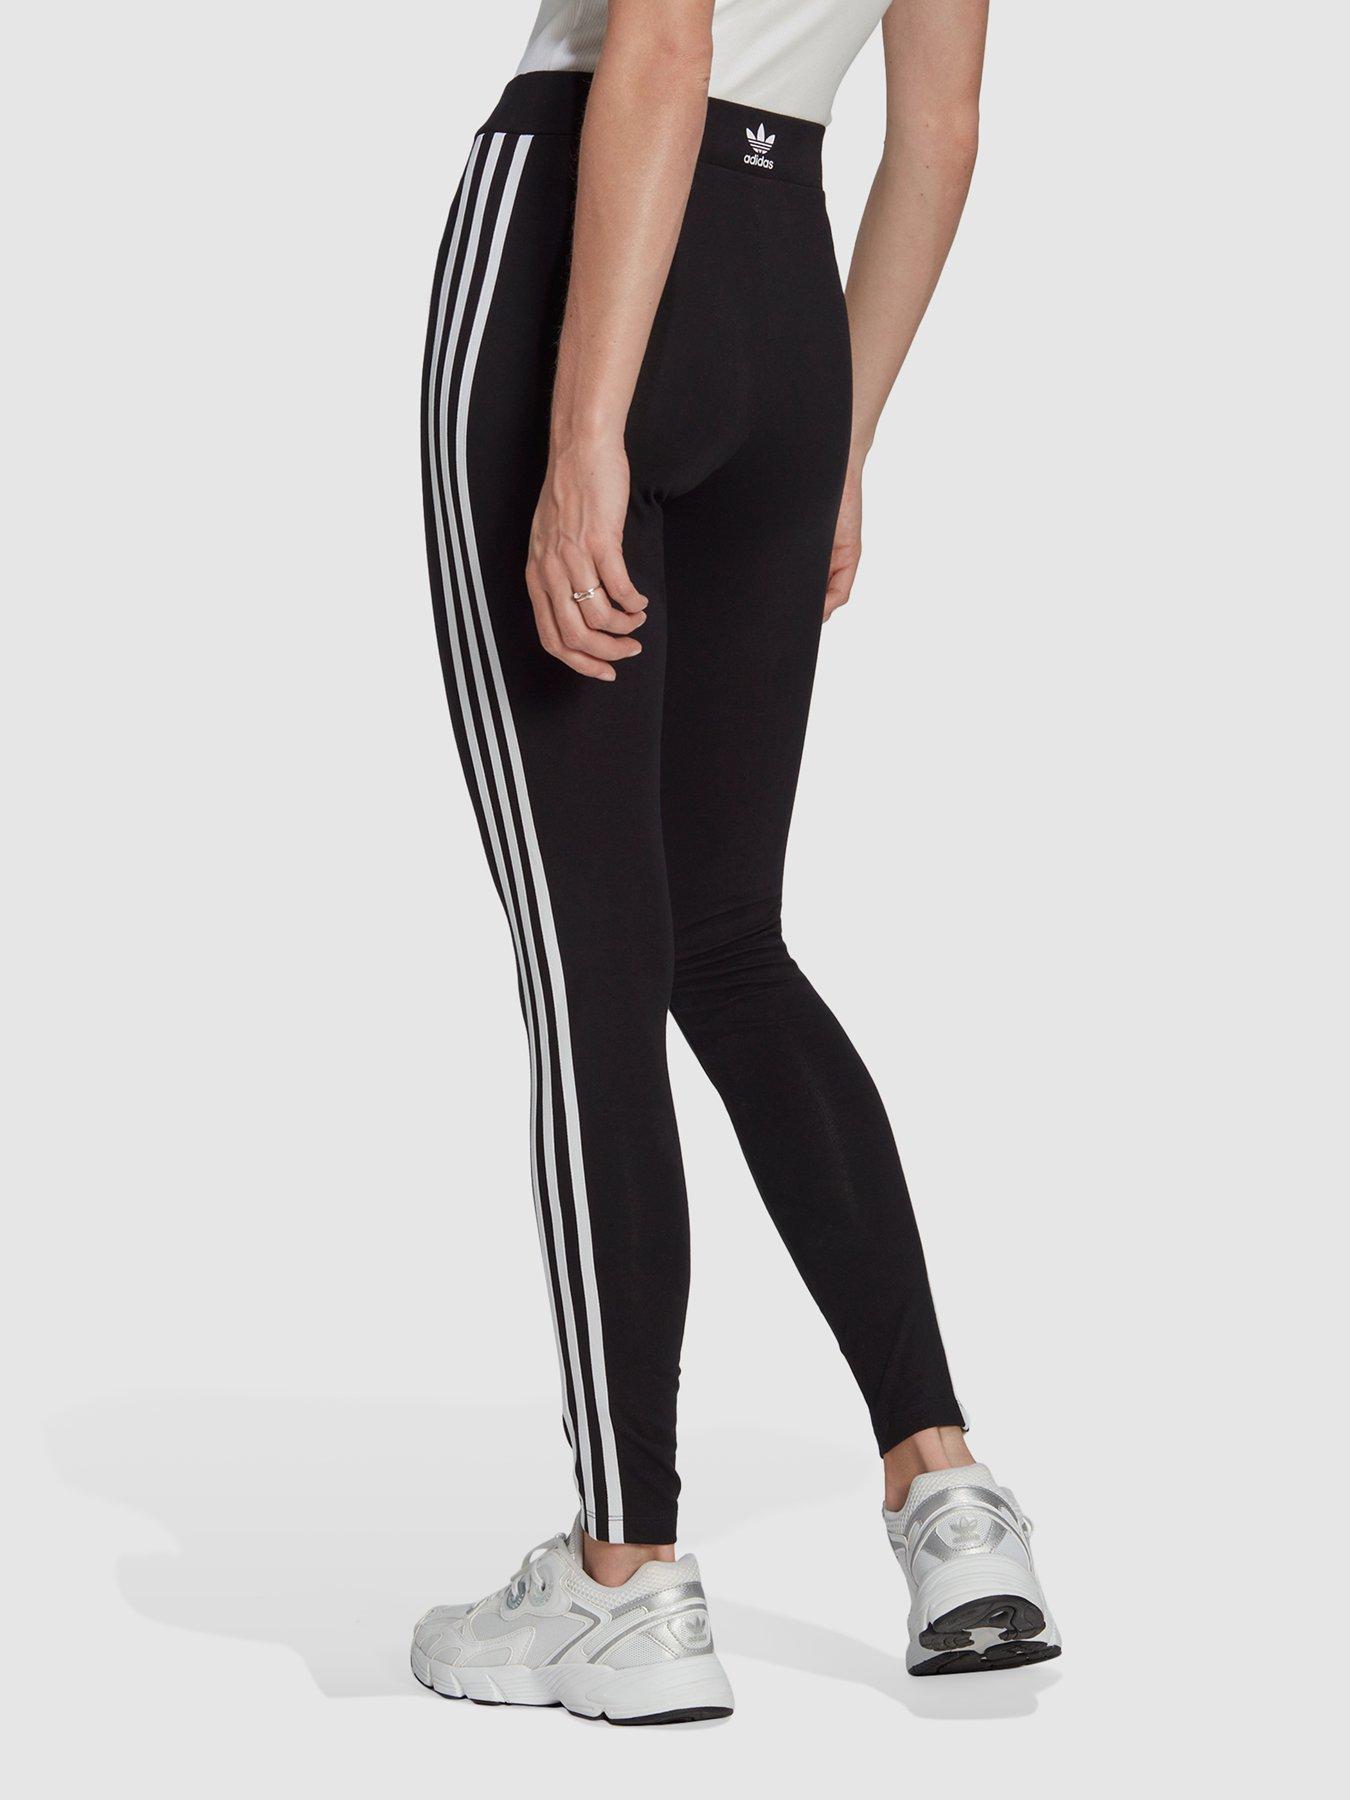 adidas Originals Women's 3-Stripes Leggings